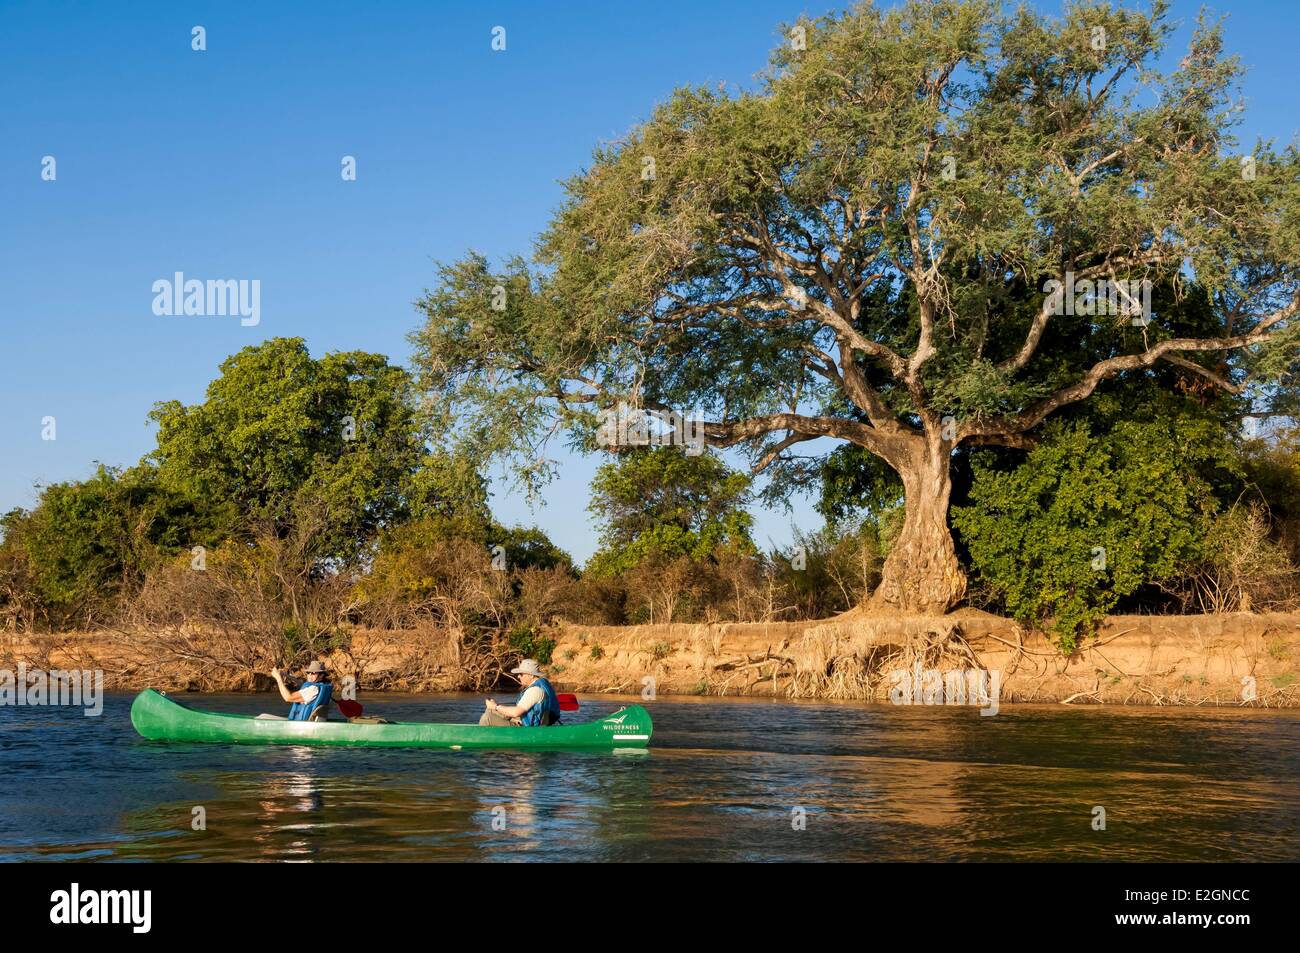 Zimbabwe Mashonaland West Province Mana Pools National Park listed as World Heritage by UNESCO Ruckomechi camp canoe safari on Zambezi river Stock Photo